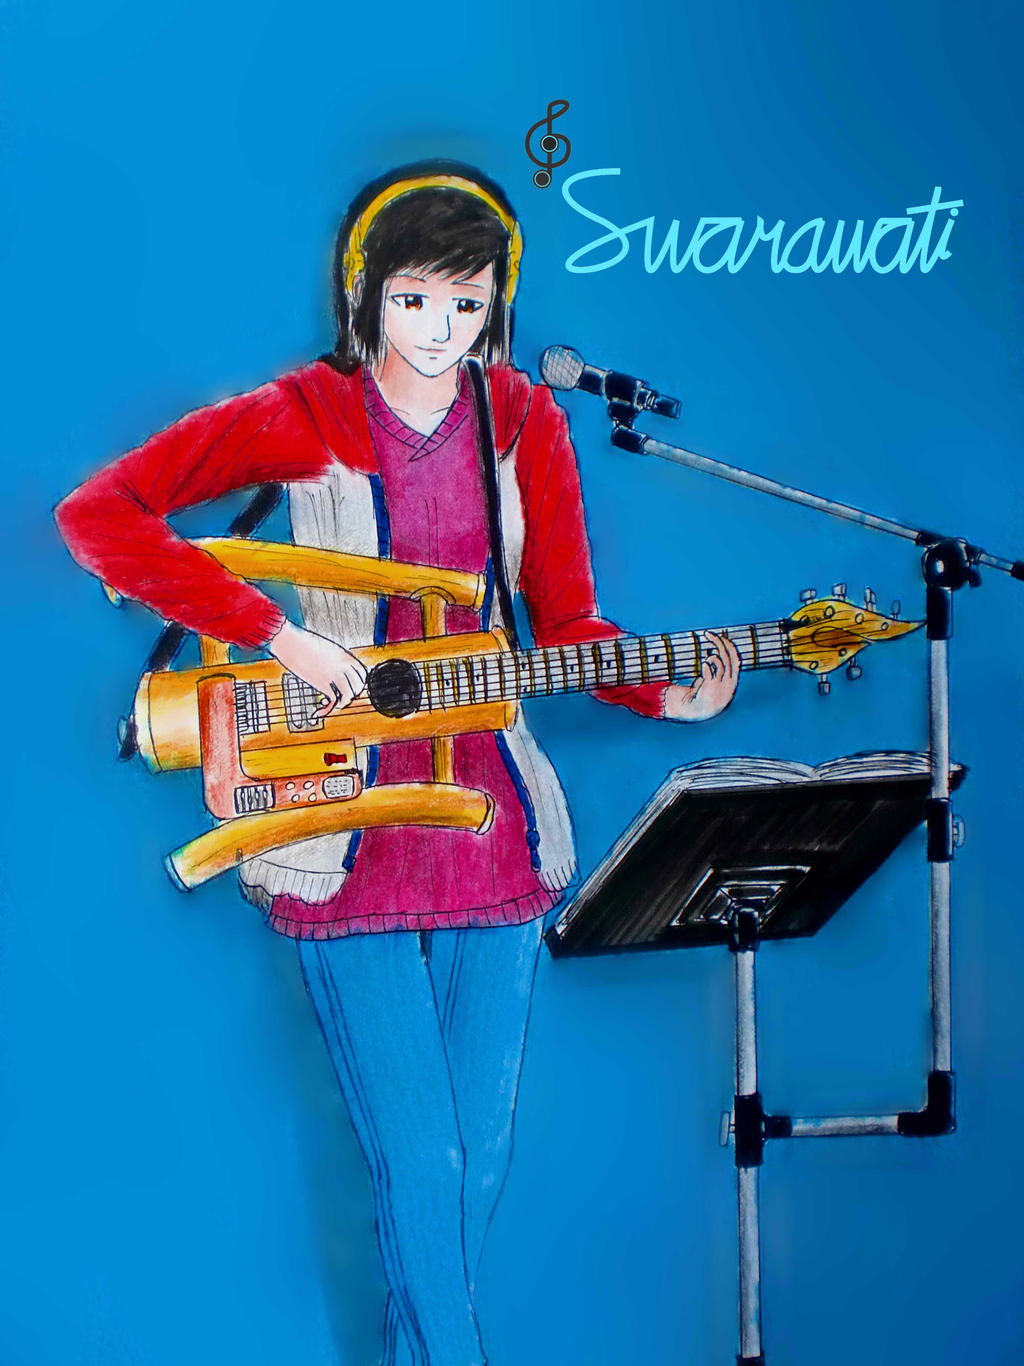 Swarawati